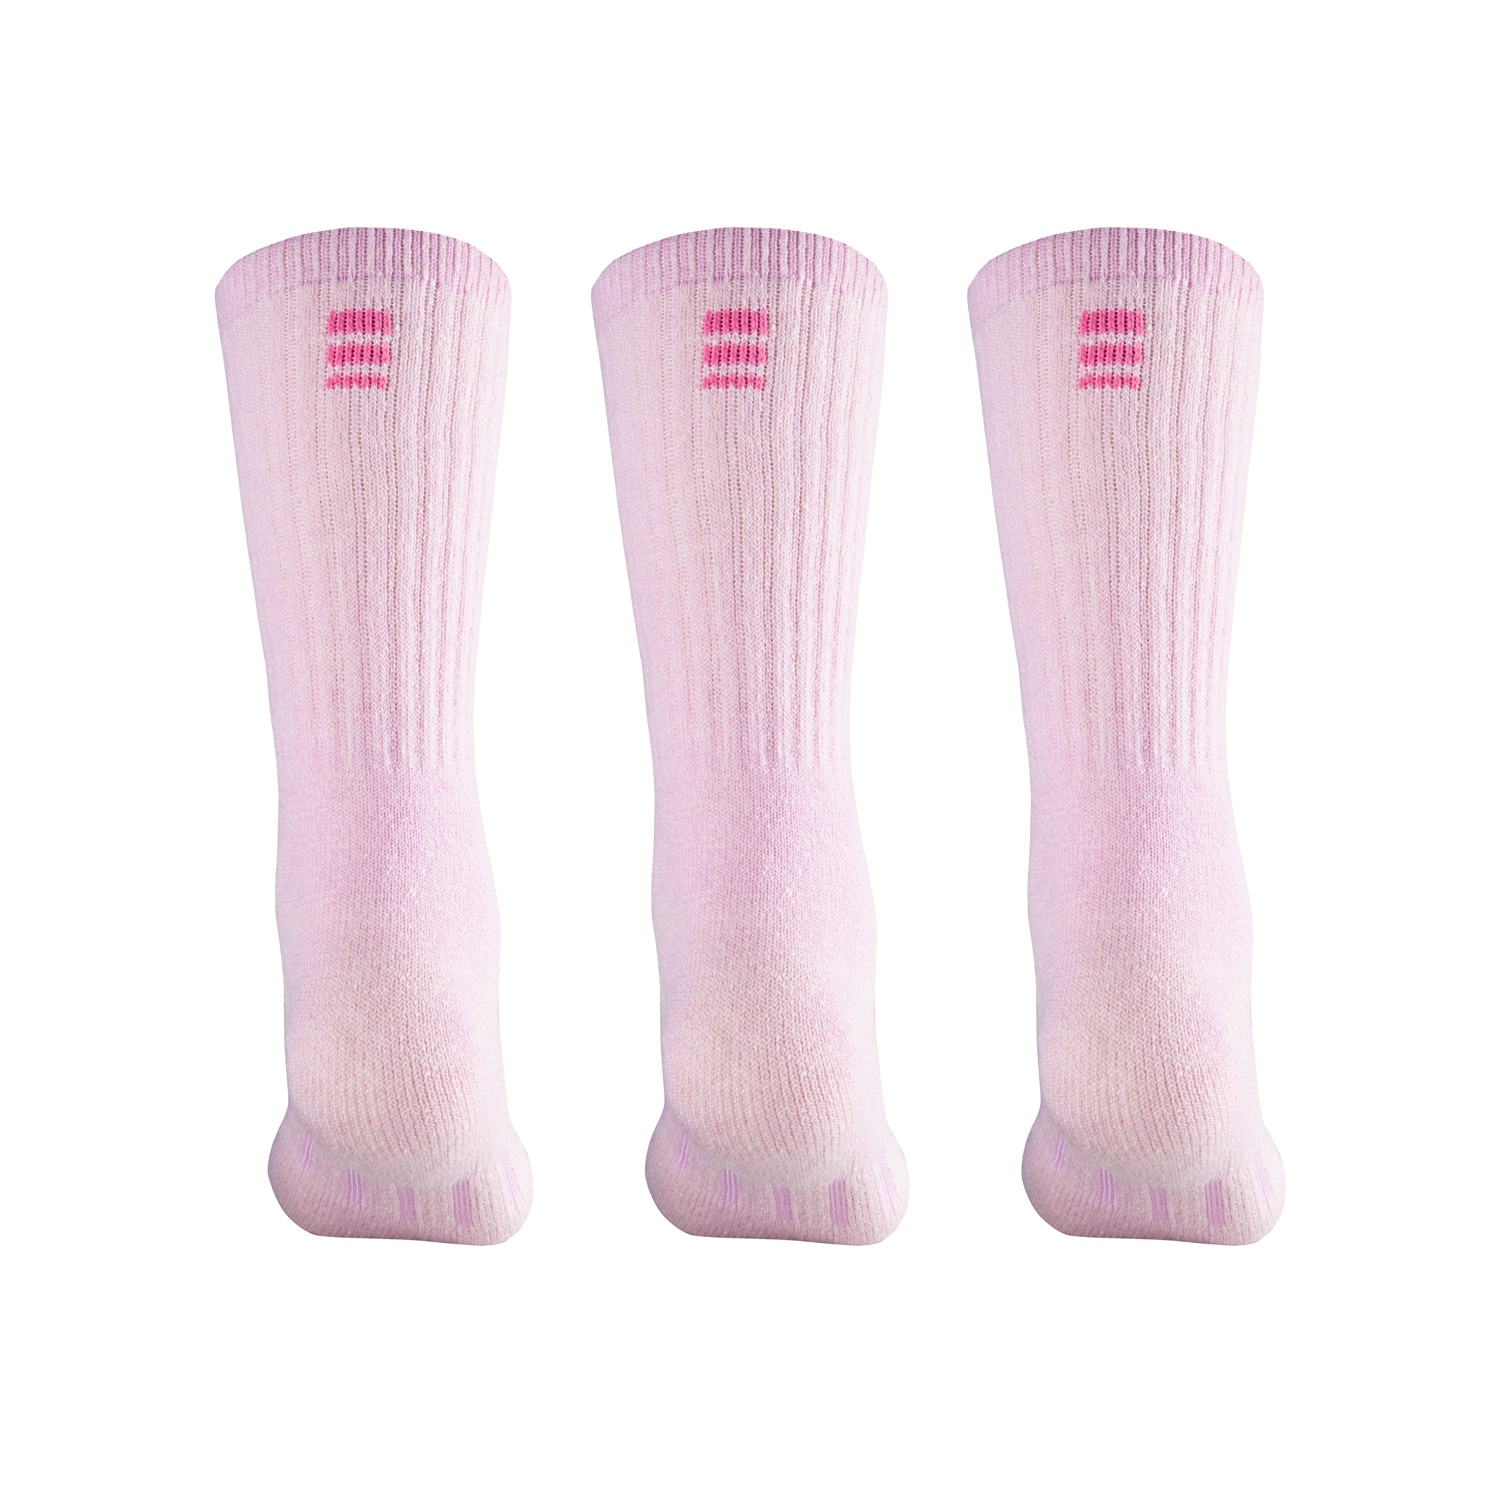 MERIWOOL 3 Pairs Merino Wool Blend Socks Choose Your Size